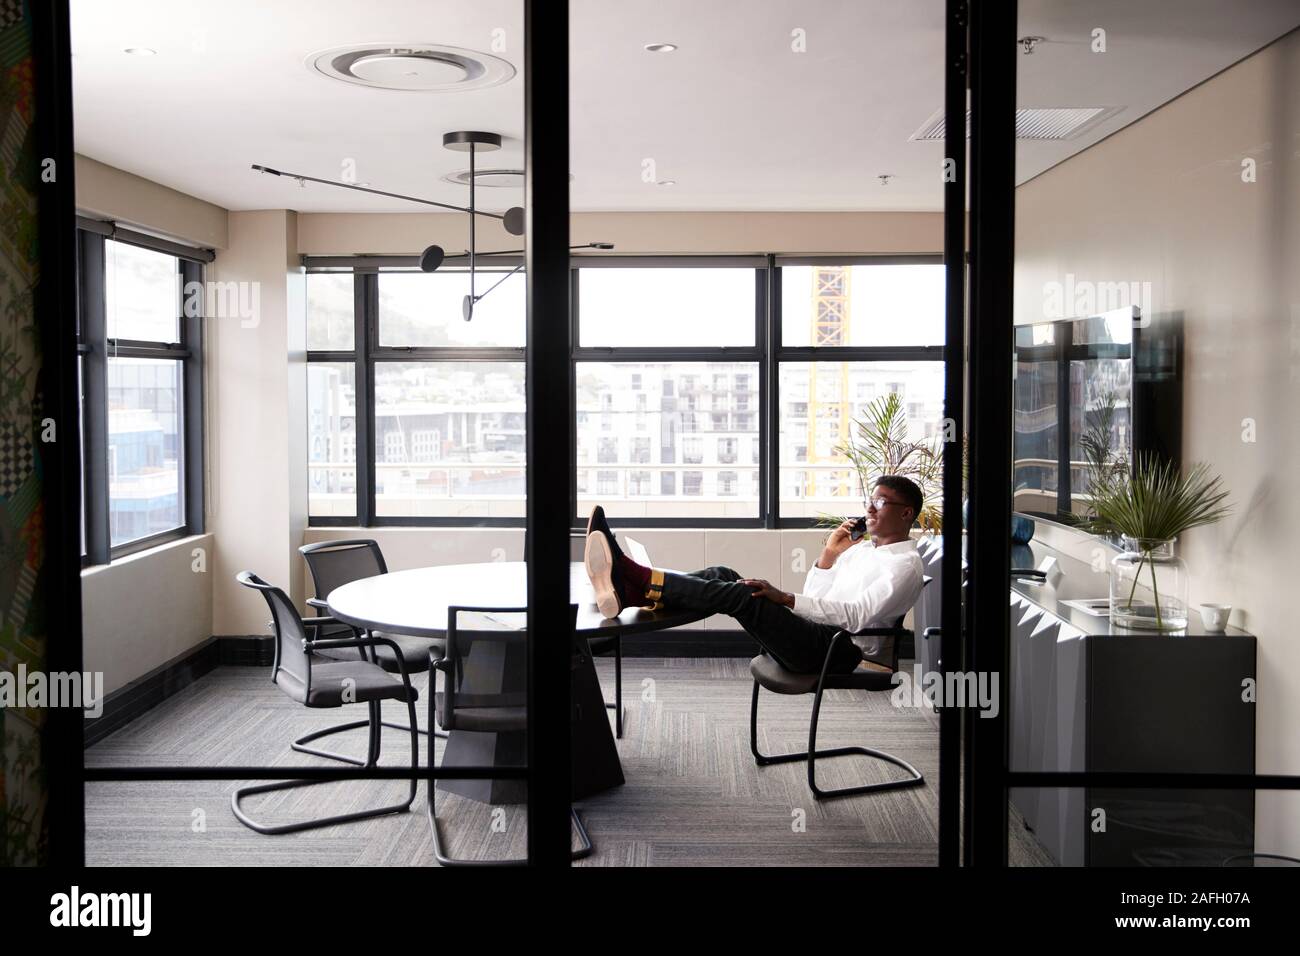 Tausendjährige schwarzer Geschäftsmann am Telefon zu sprechen mit den Füßen auf einem Schreibtisch, vom Eingang gesehen Stockfoto